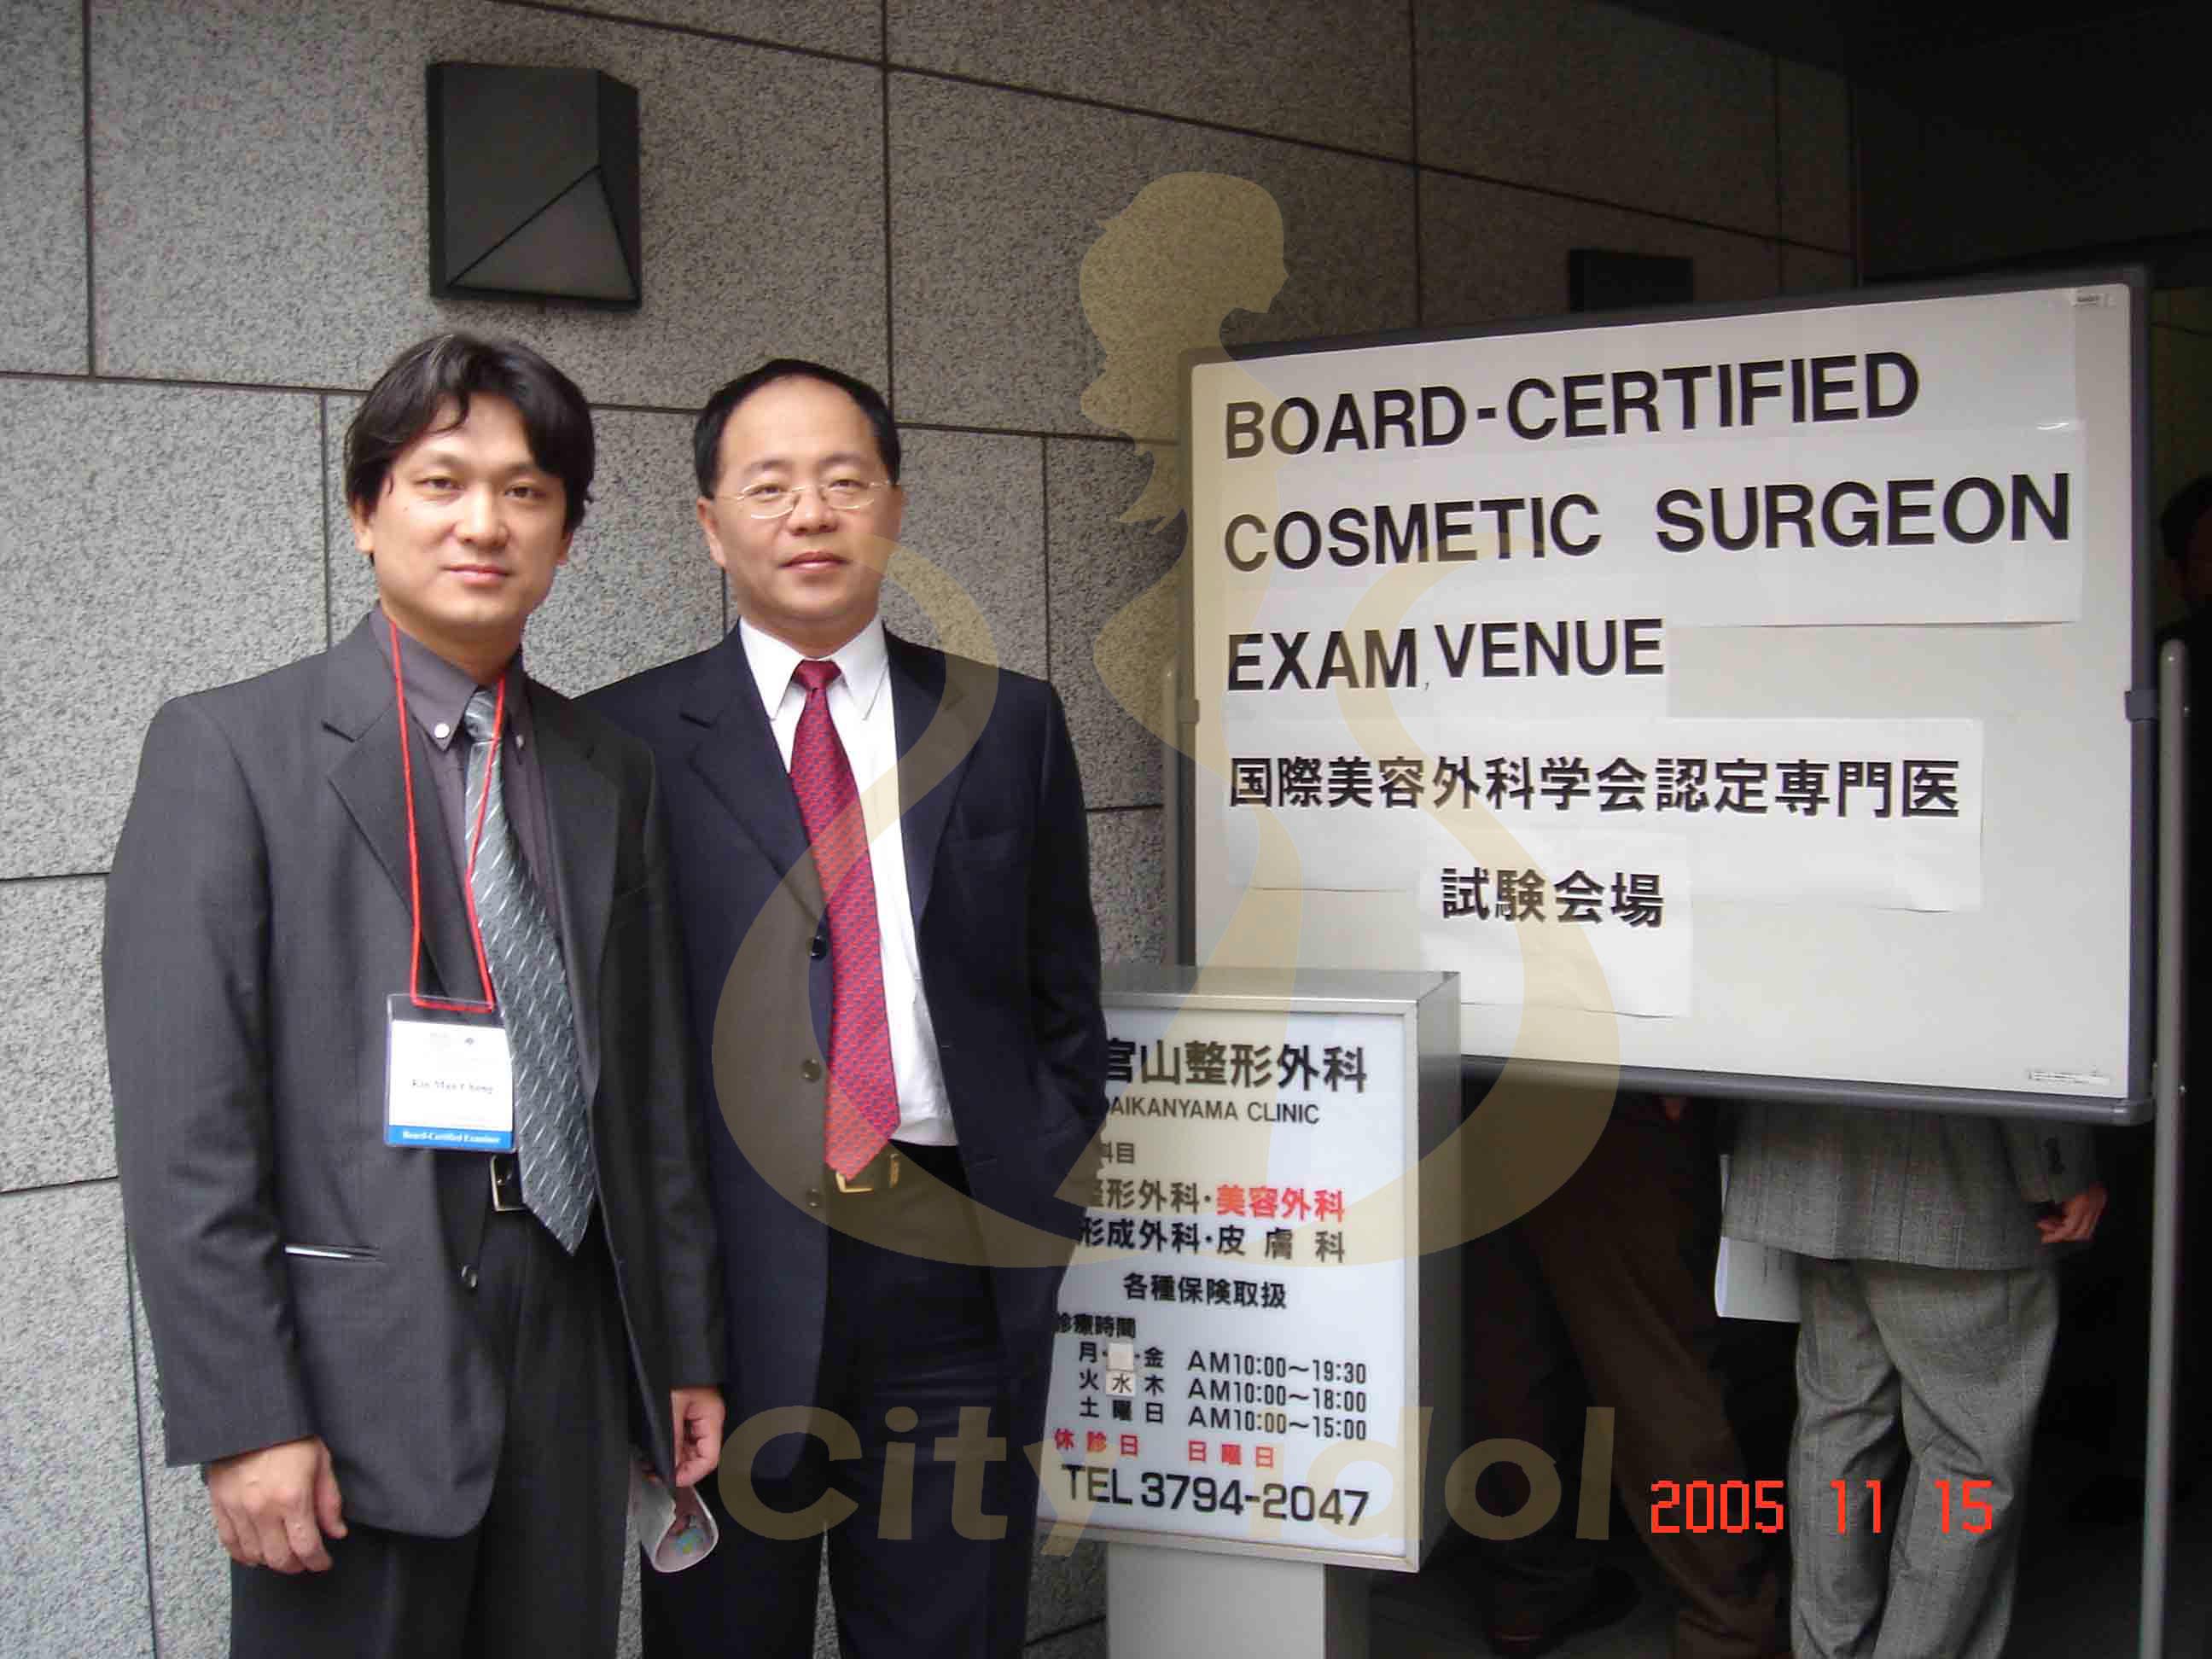 2005-11-15 國際美容外科專科考試-與郝老師於日本考場合照 